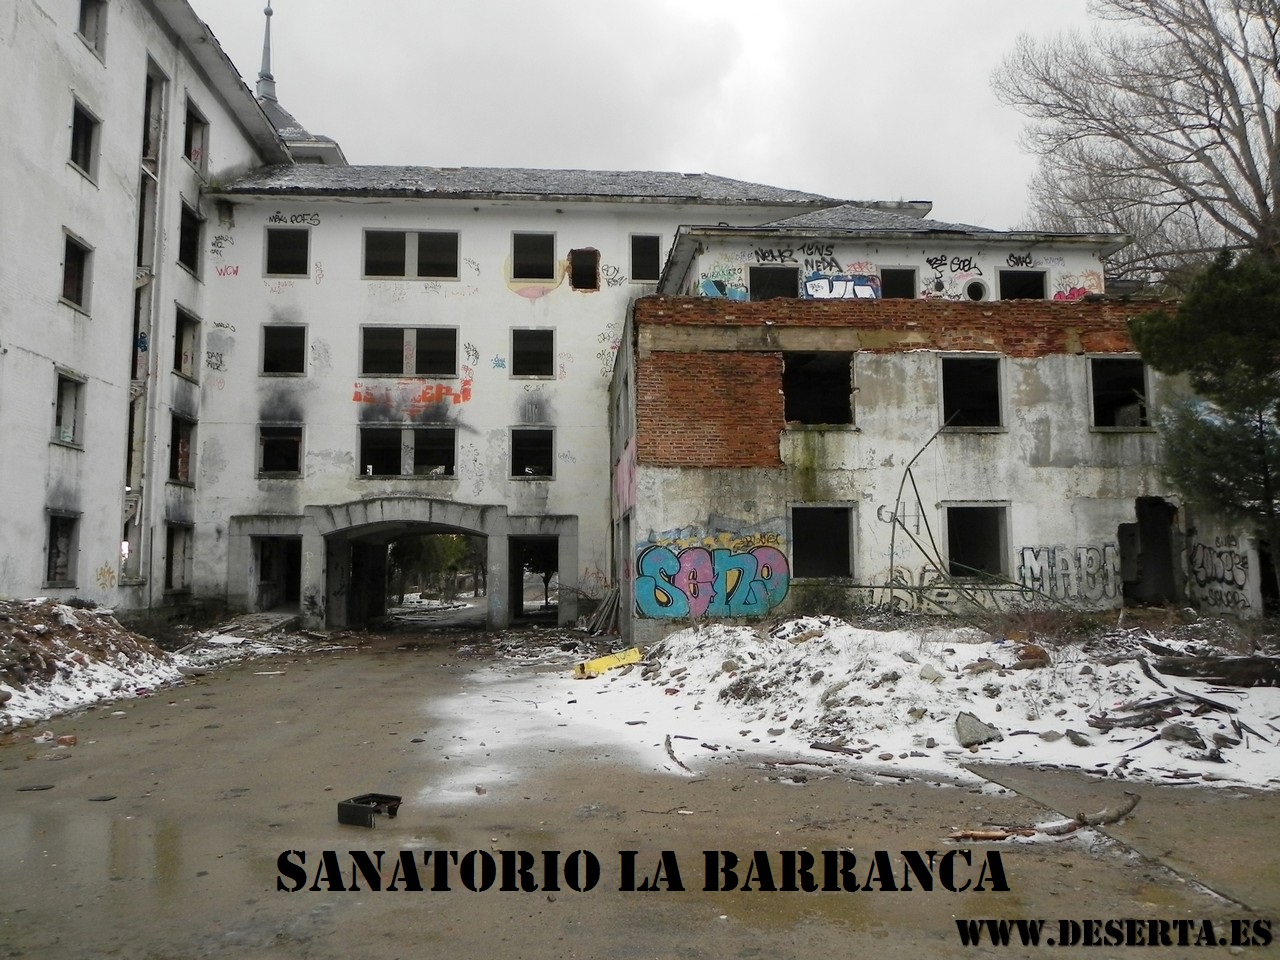 La Barranca